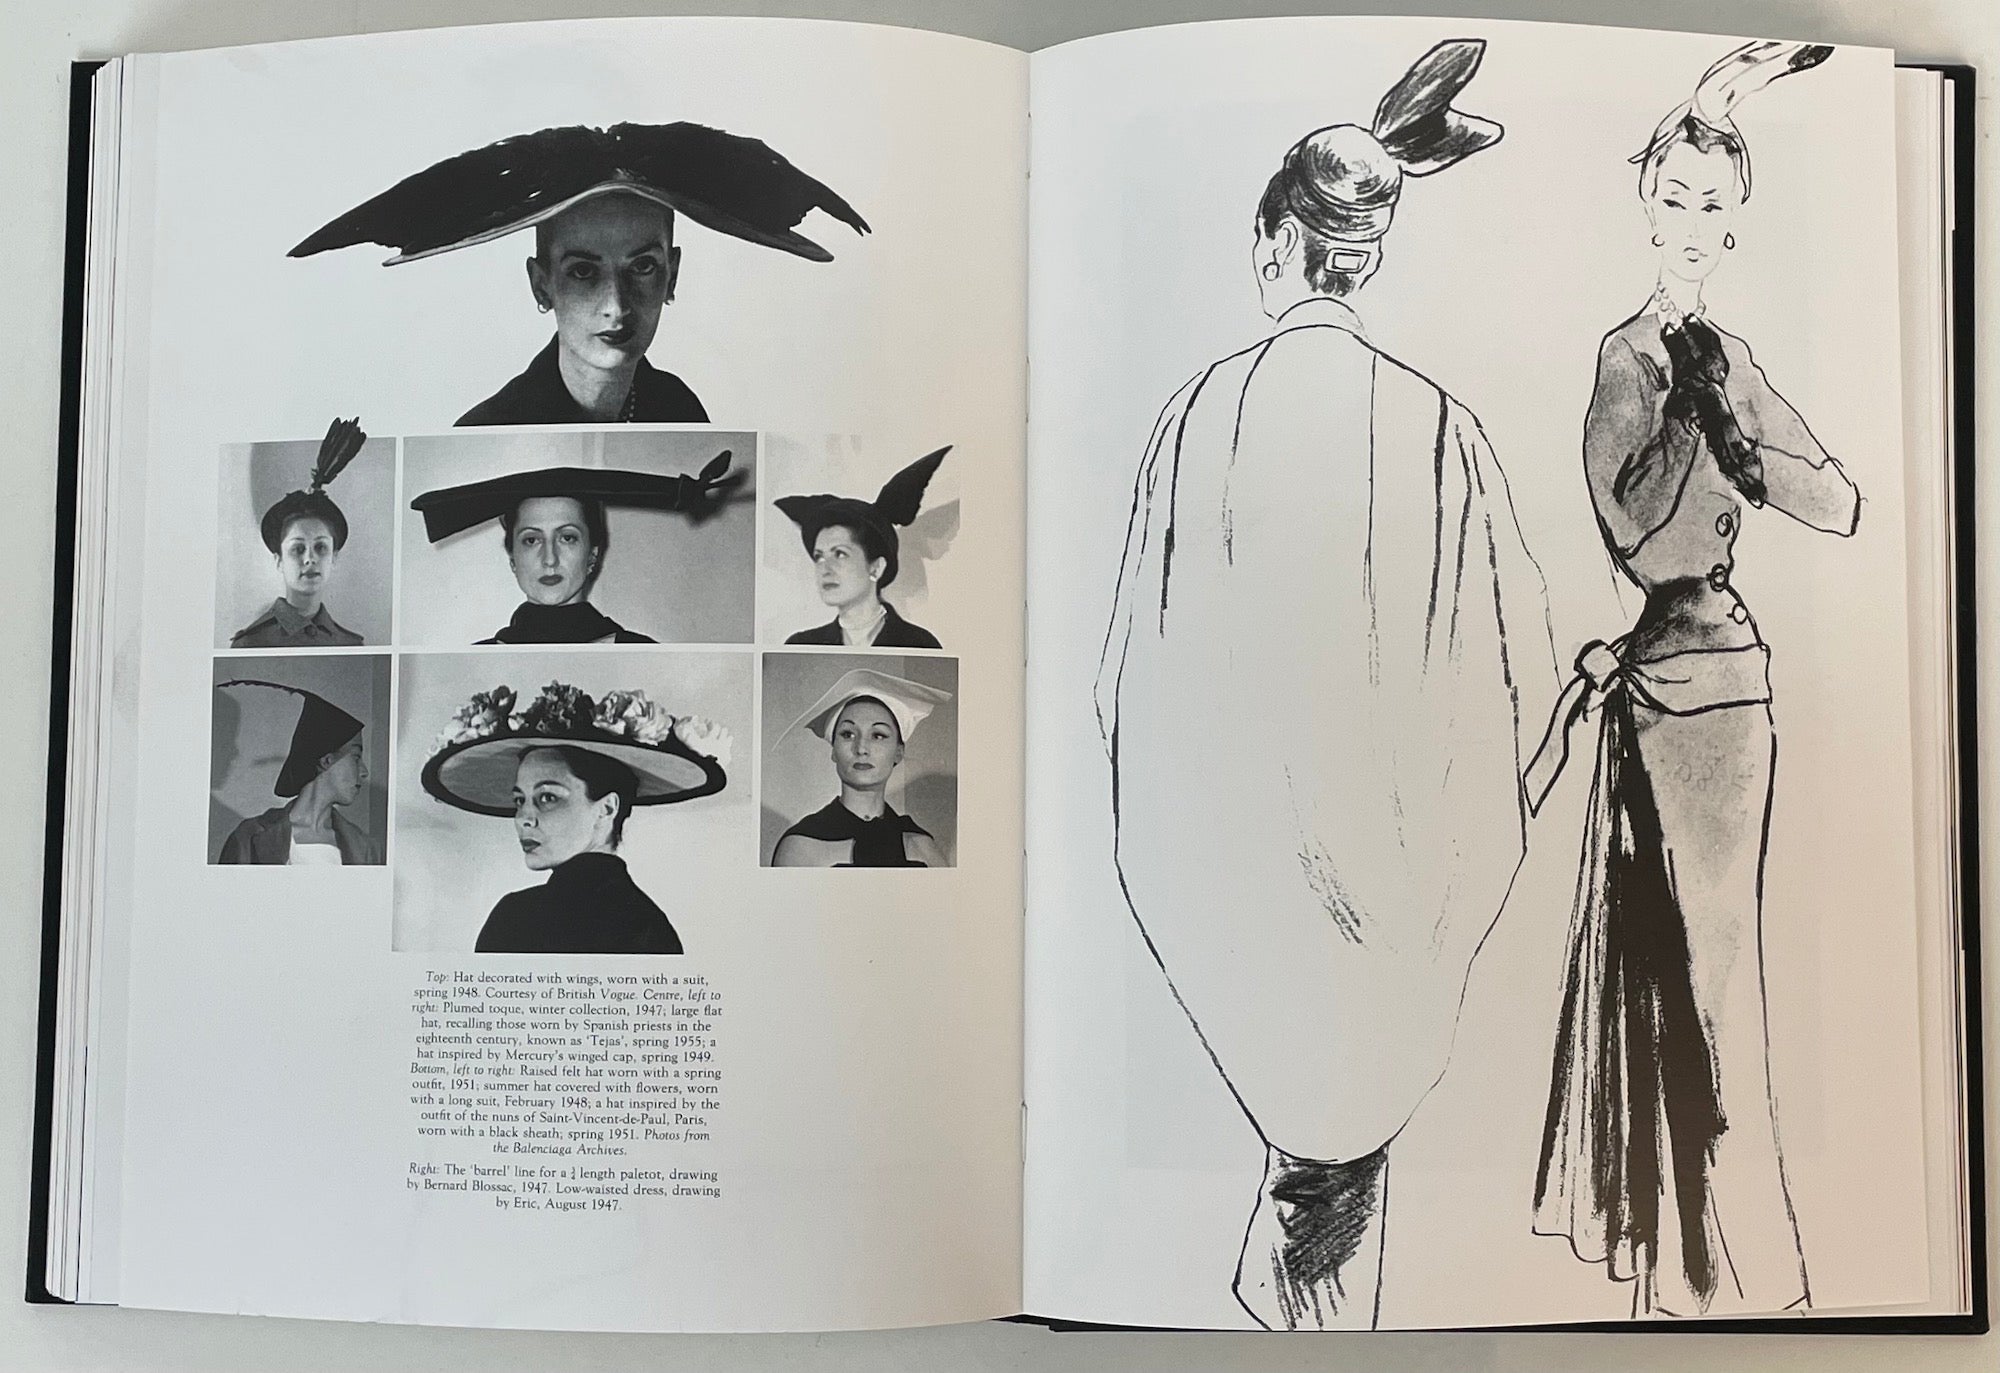 [Balenciaga, Cristòbal. (1895 - 1972)] Jouve, Marie-Andrée & Demornex, Jacqueline. Balenciaga